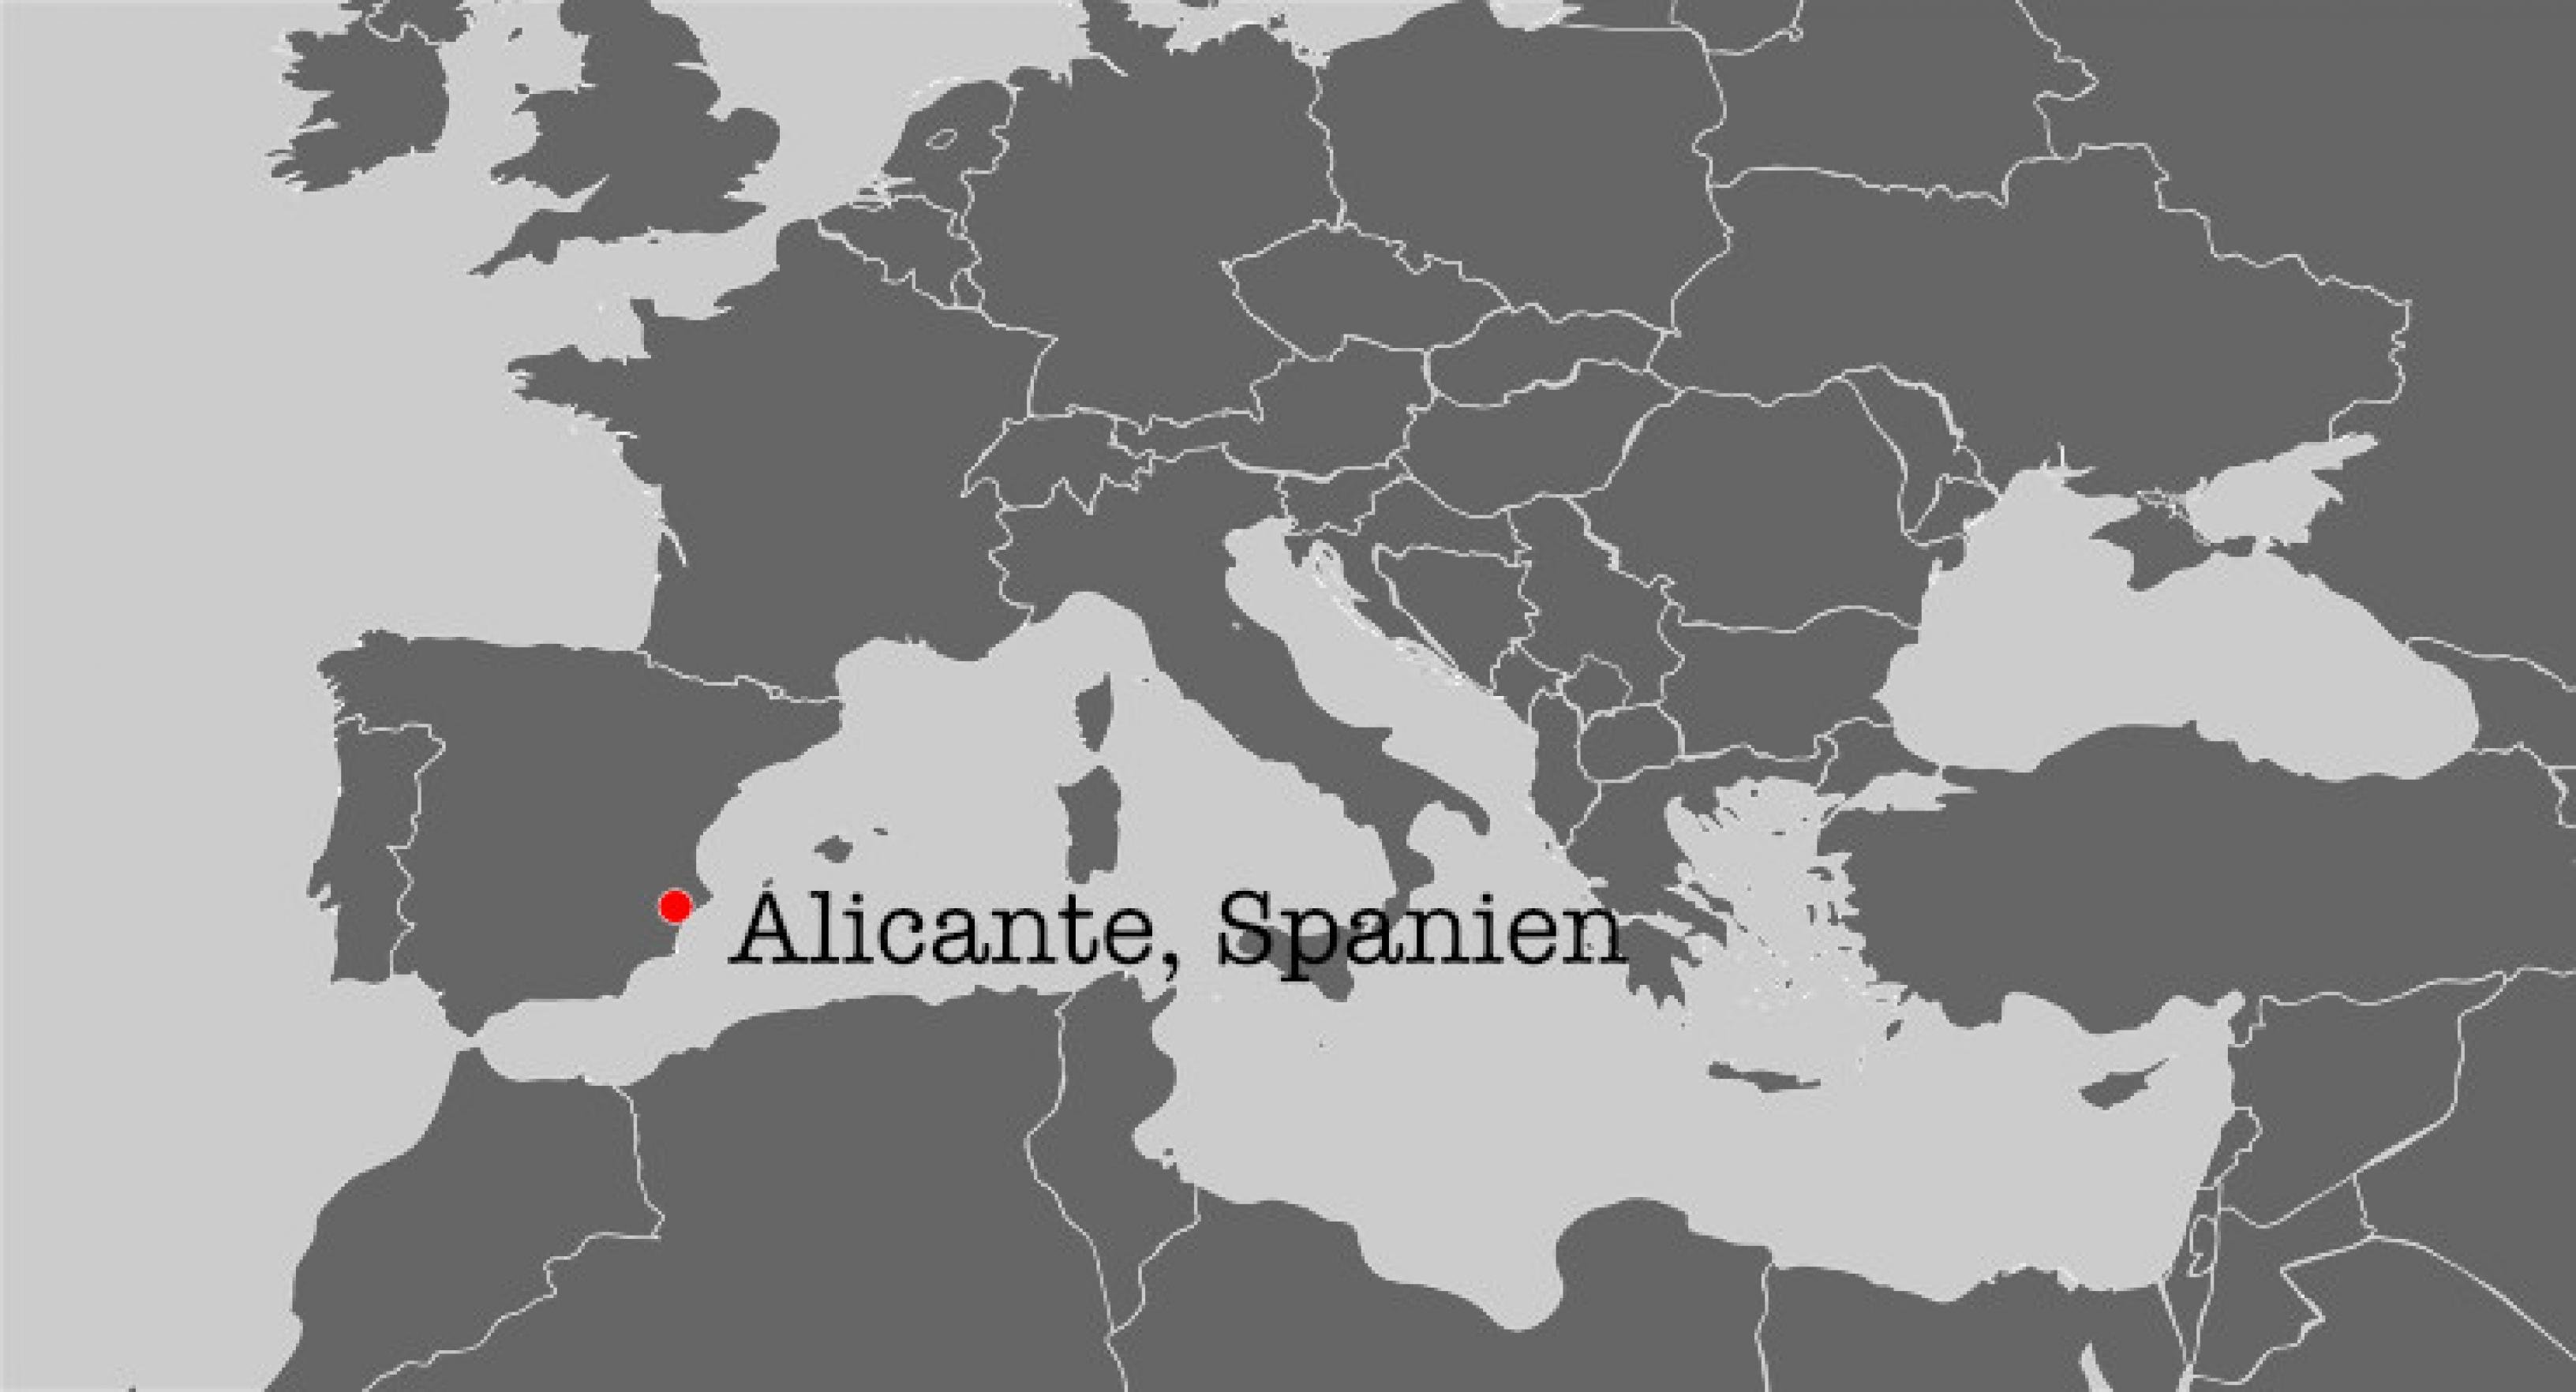 Eine Karte mit einem Ausschnitt des Mittelmeeres. Zu sehen ist die Lage der Stadt Alicante in Spanien, die durch einen roten Punkt markiert ist.